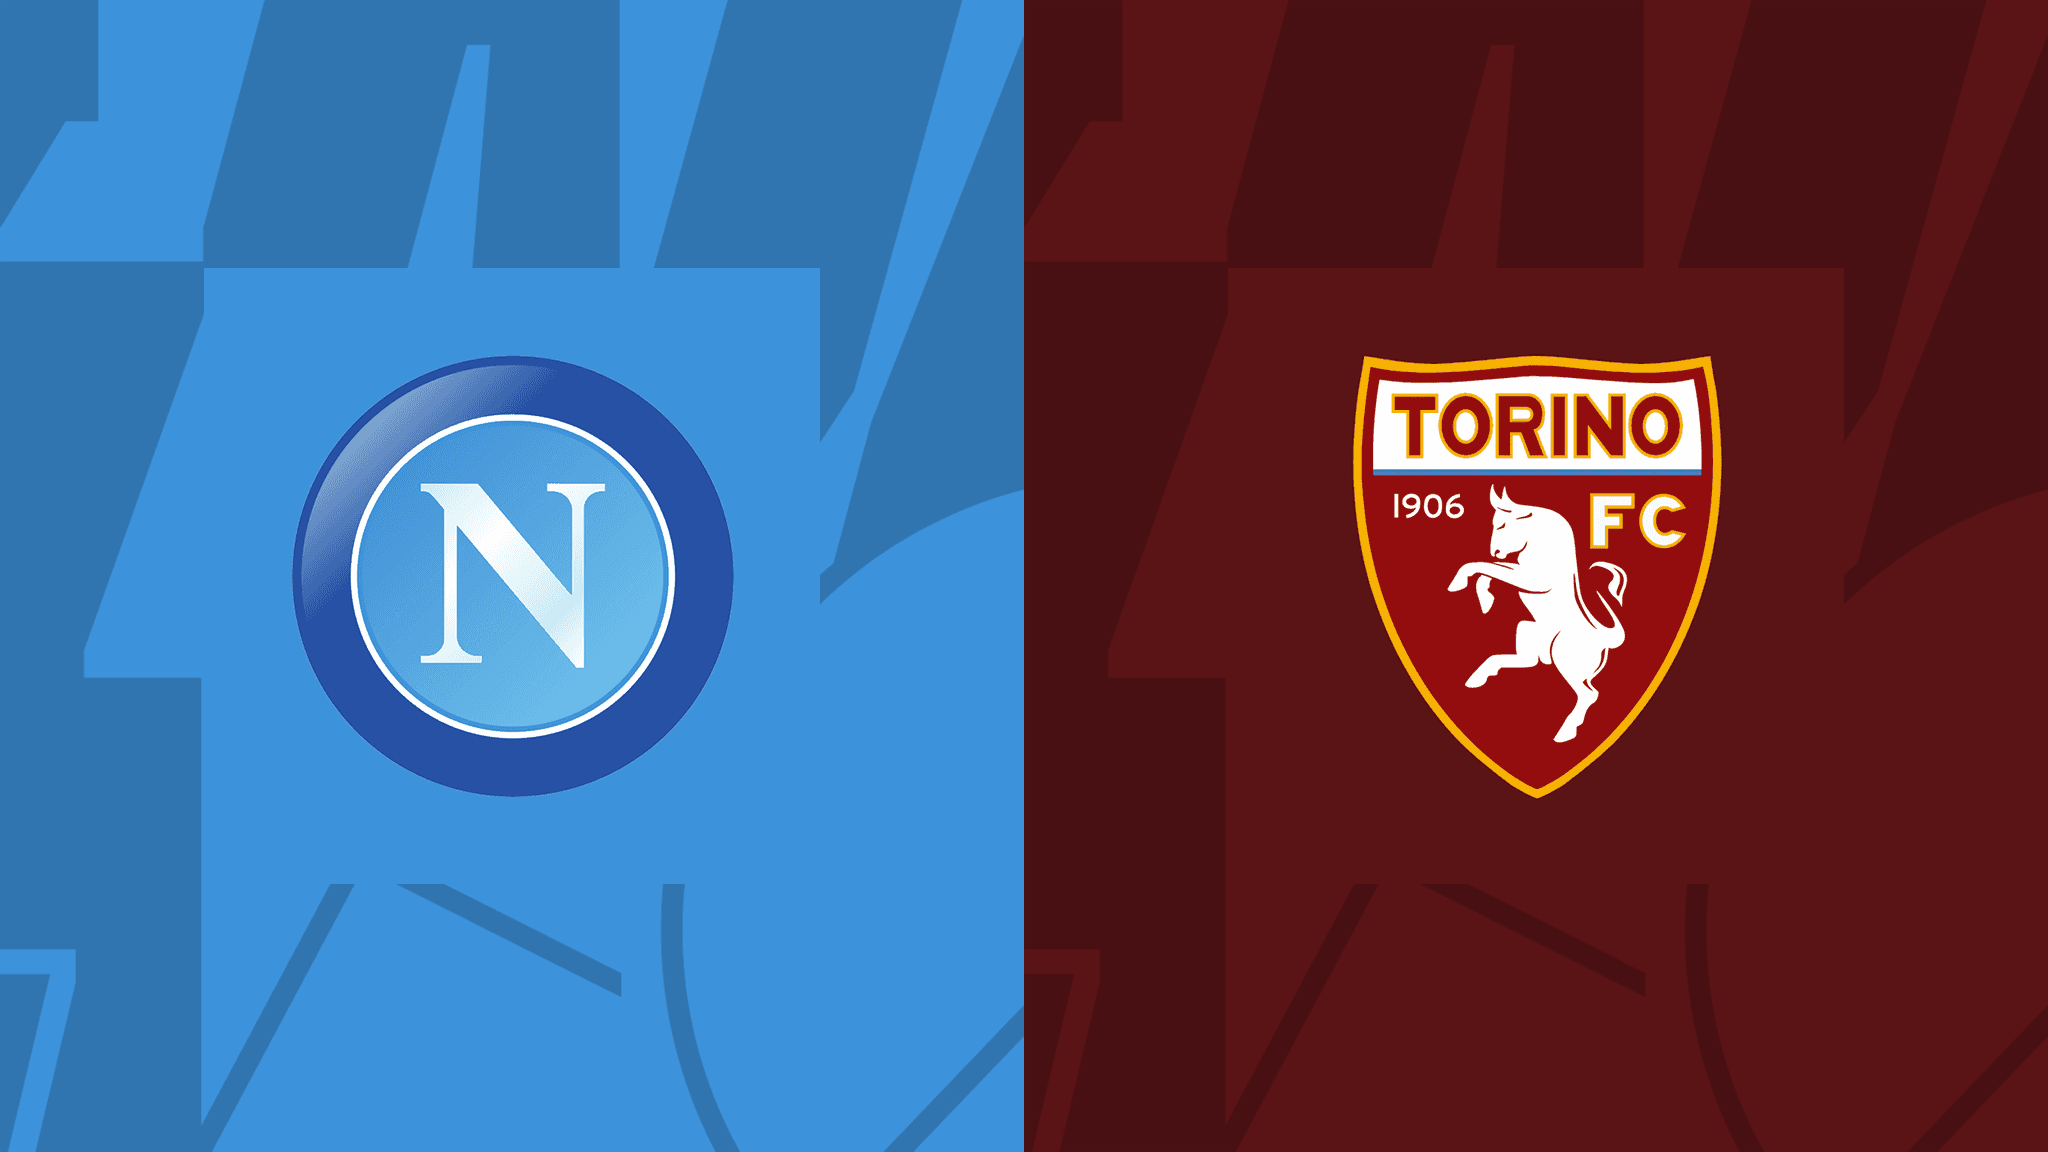  مشاهدة مباراة نابولي و تورينو بث مباشر 01/10/2022 Napoli vs Torino